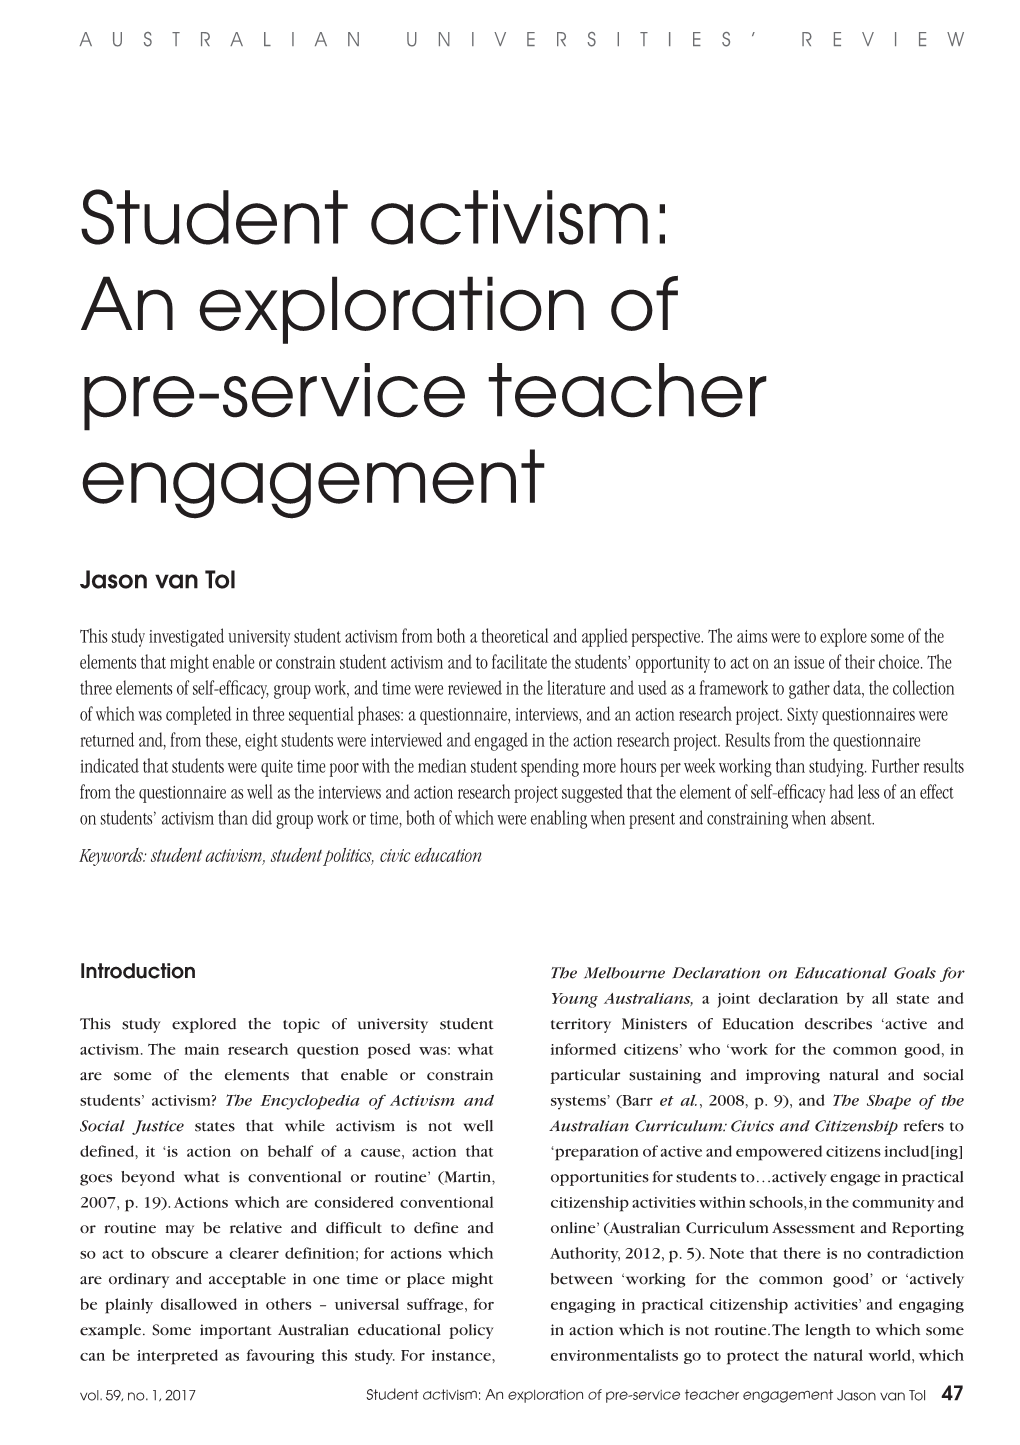 Student Activism: an Exploration of Pre-Service Teacher Engagement